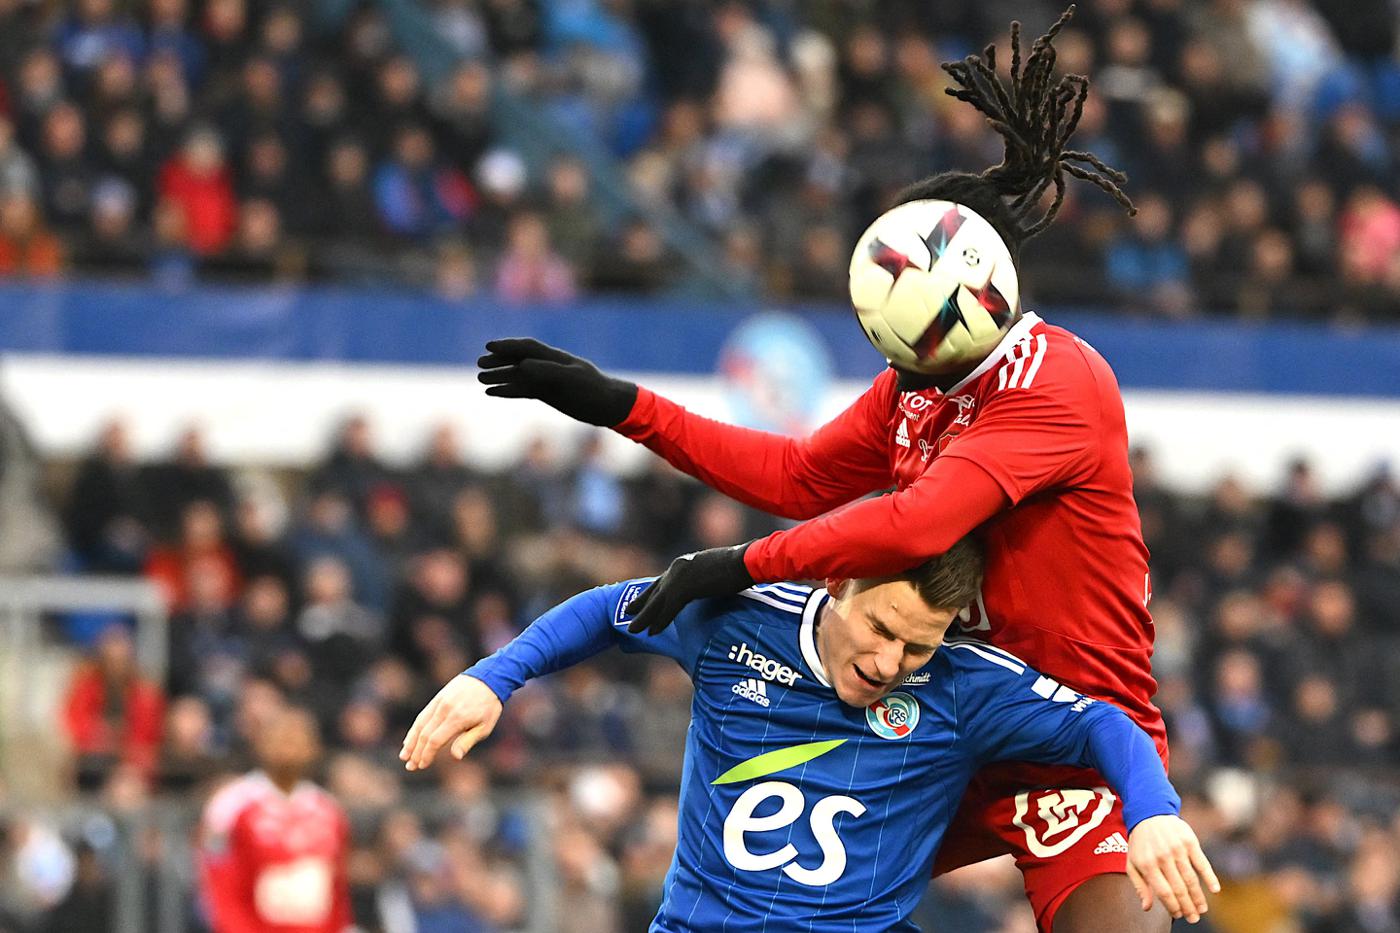 Strasbourg v Brest - 0-1. Mistrzostwa Francji, runda 26. Przegląd meczów, statystyki